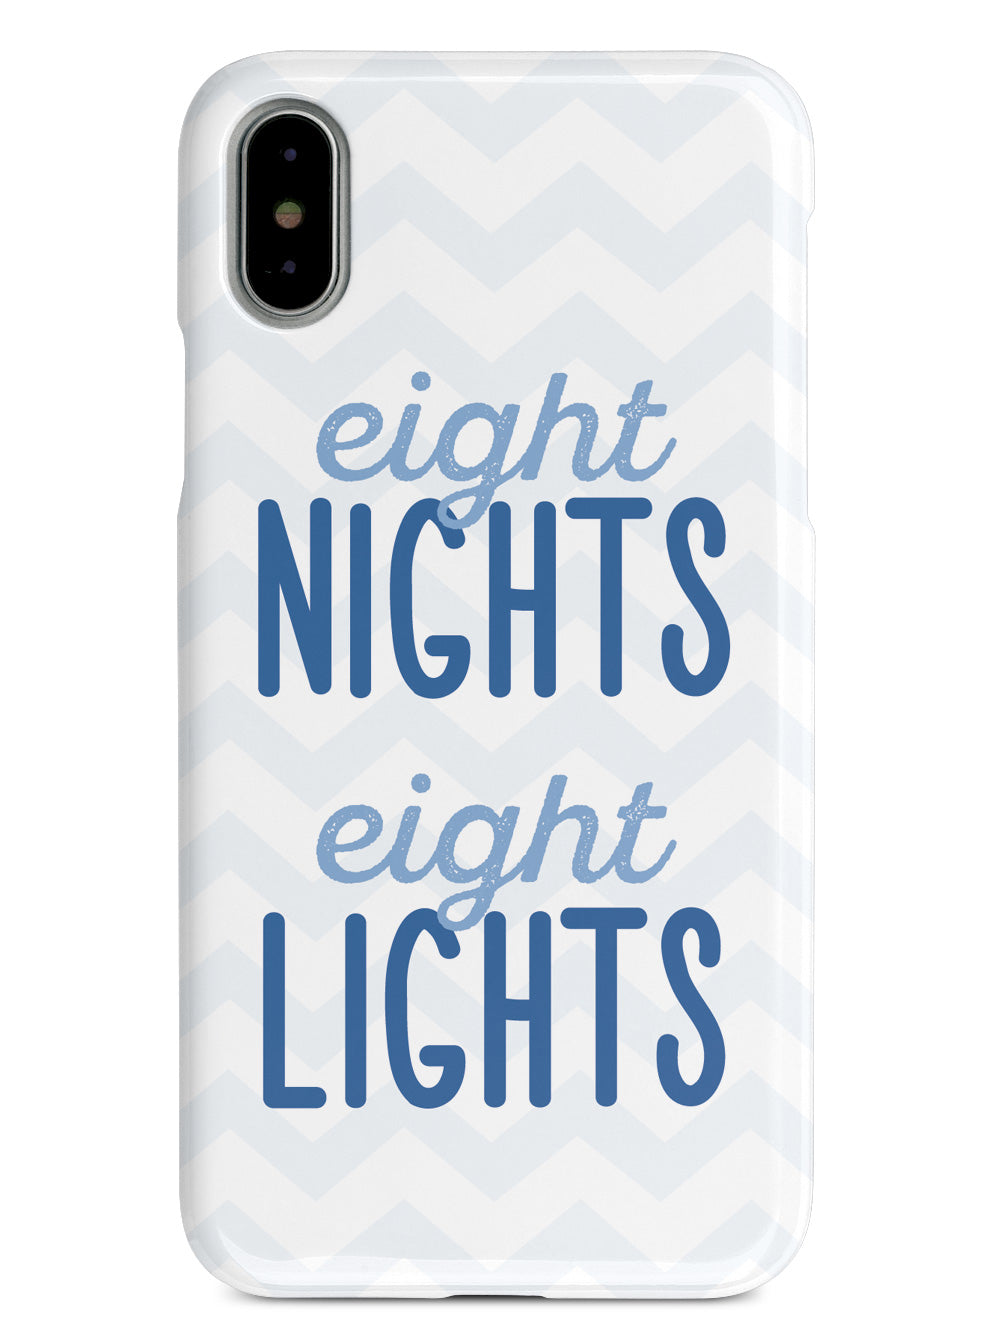 Eight Nights, Eight Lights - Hanukkah Case